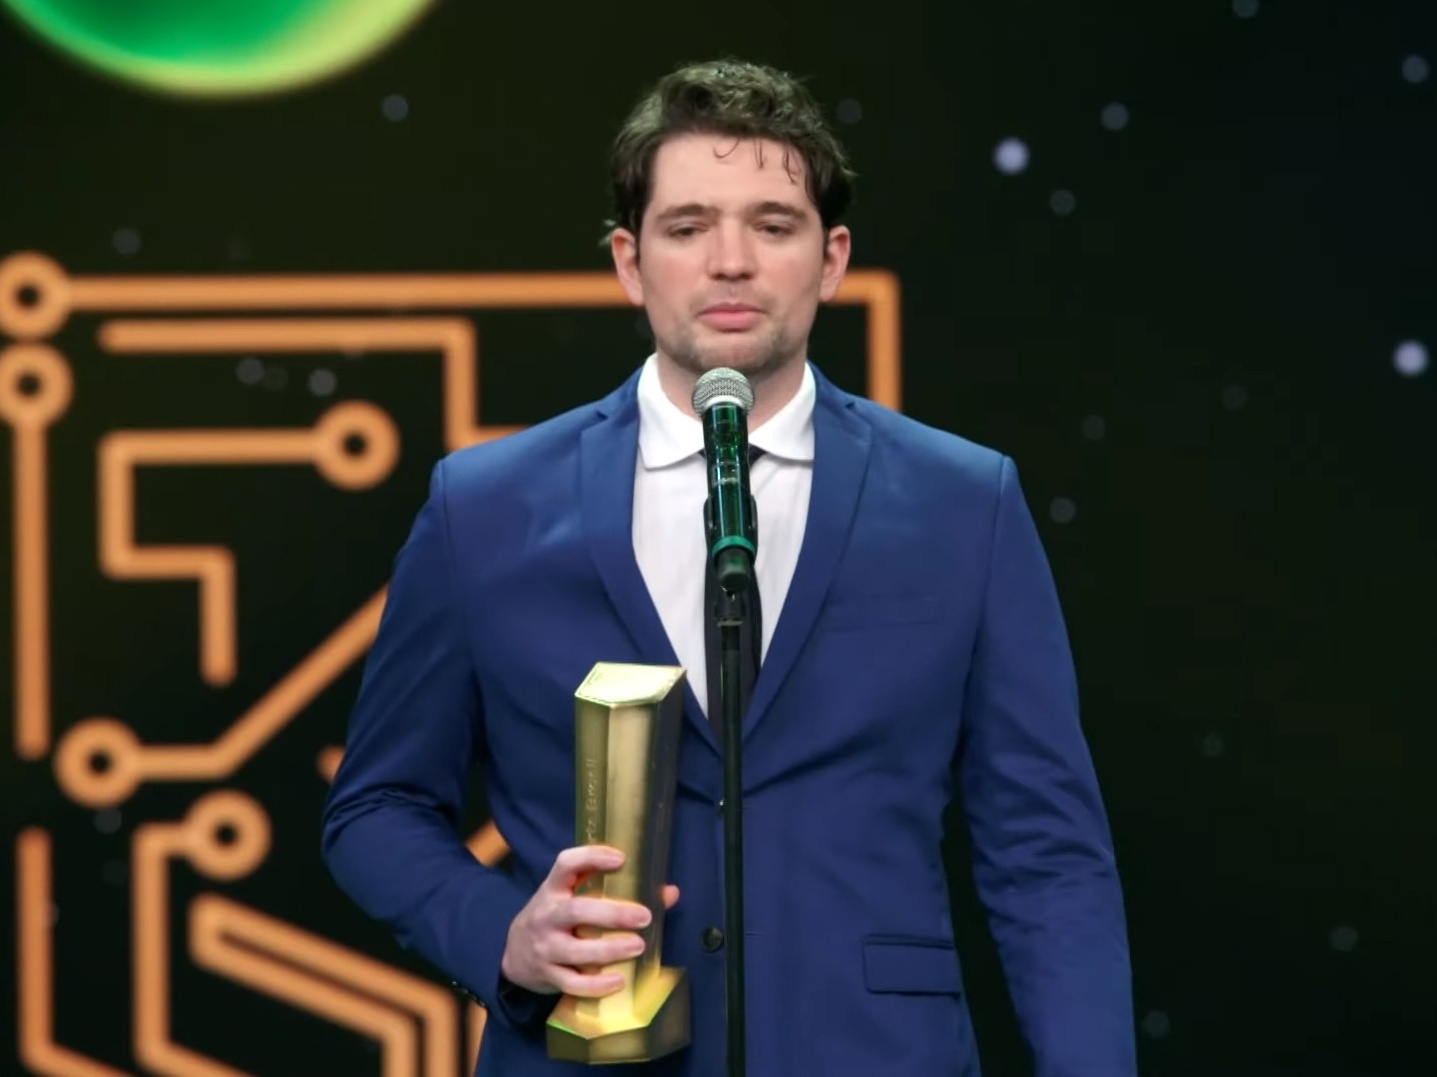 Prêmio eSports Brasil 2022: Gaules é o melhor Streamer pela